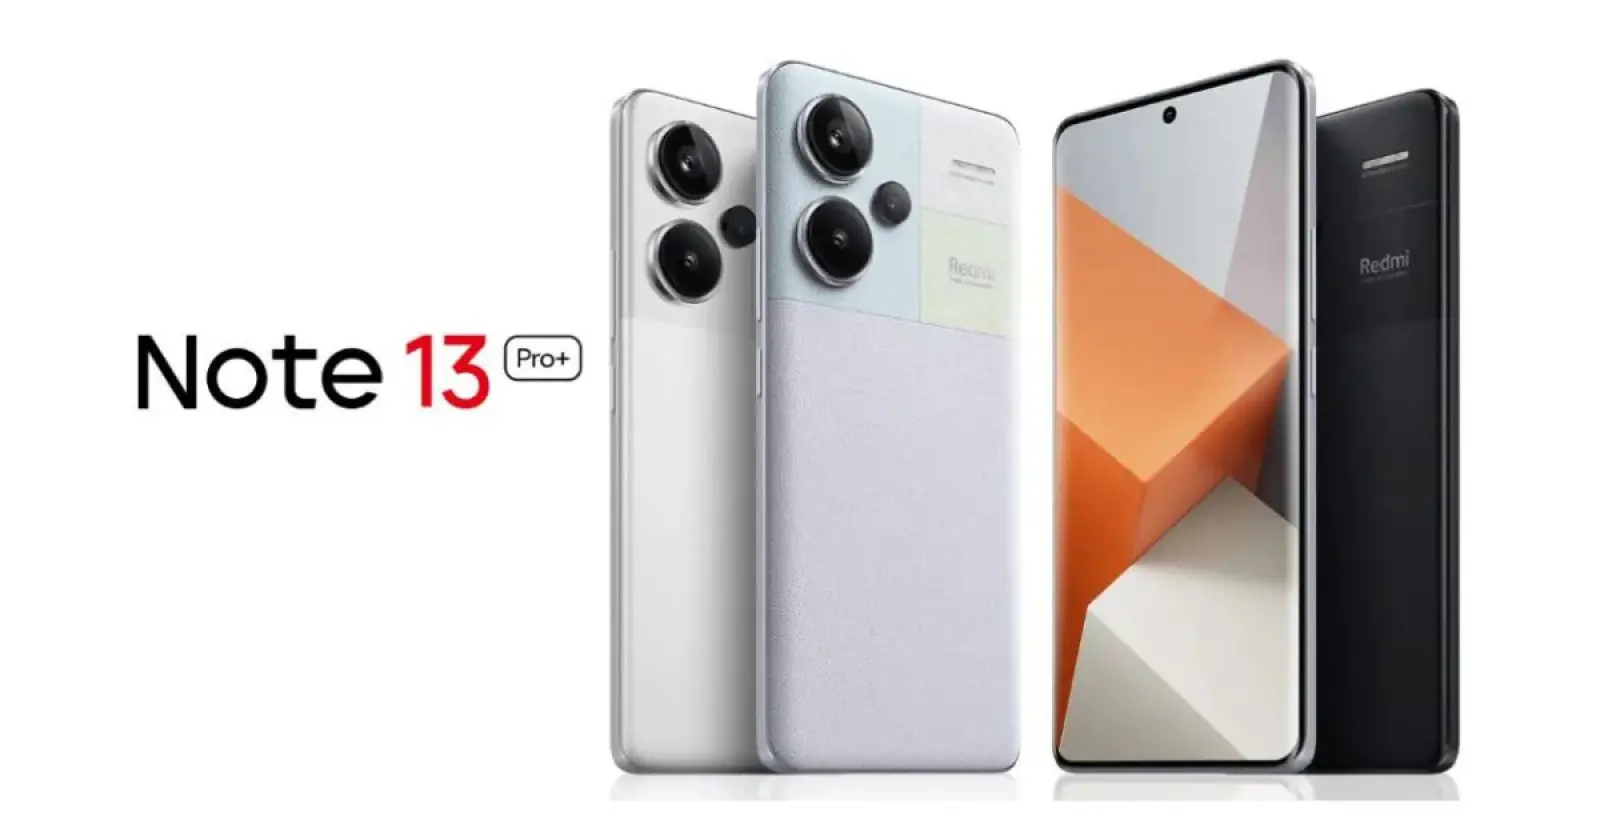 धमाकेदार फीचर्स के साथ आ रहा है Redmi Note 13 Pro+, 200MP कैमरा और 120W फास्ट चार्जिंग!